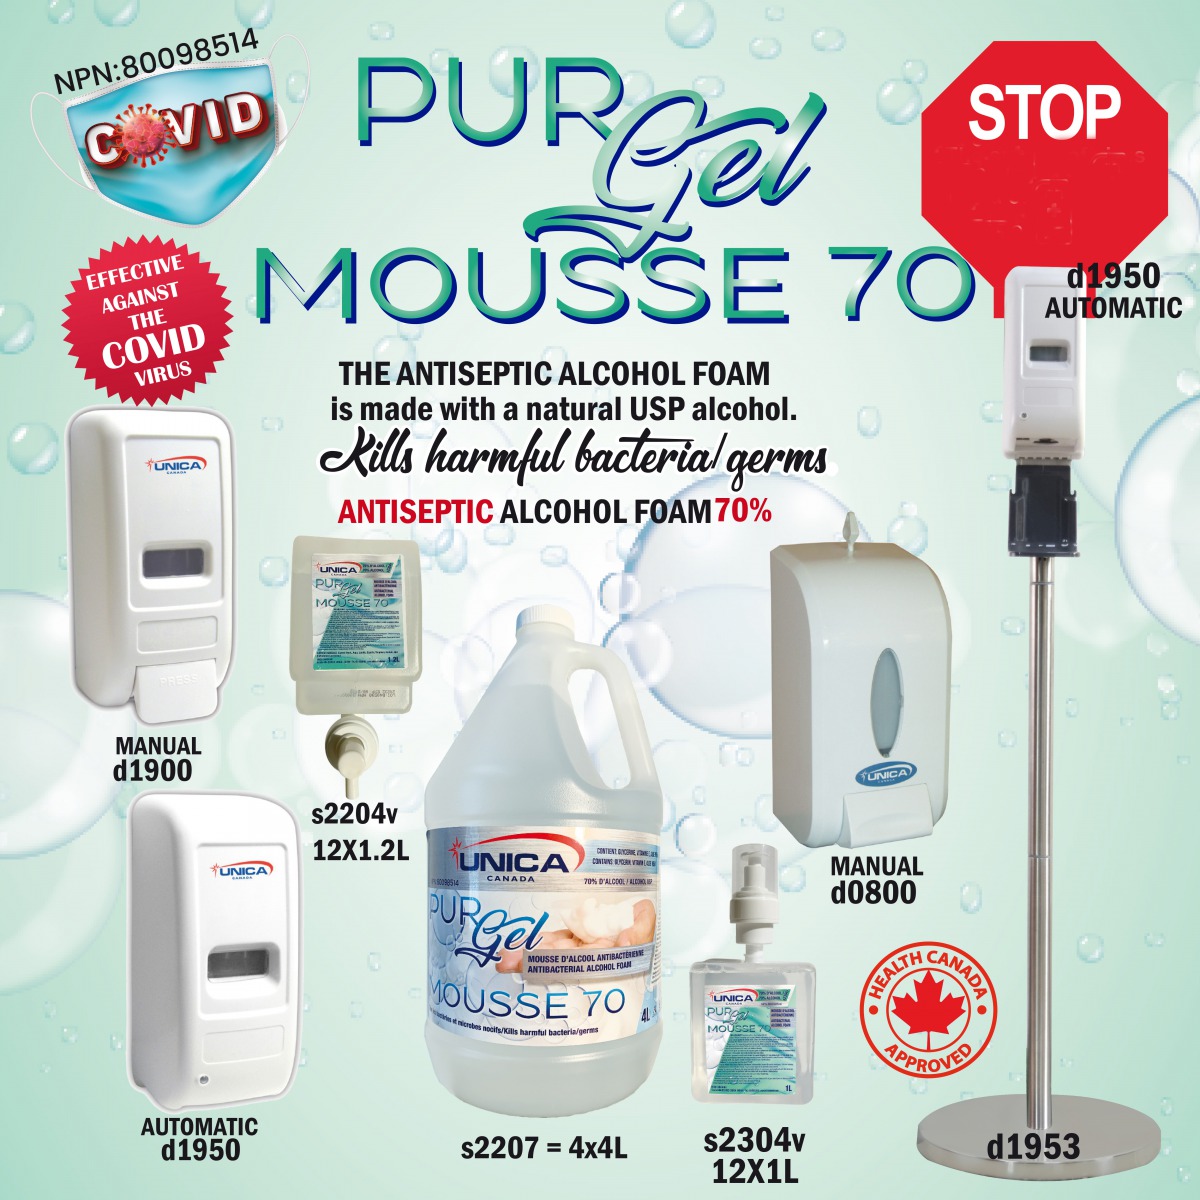 Purgel Mousse - 70 NPN 80098514 (800 Unicafoam)